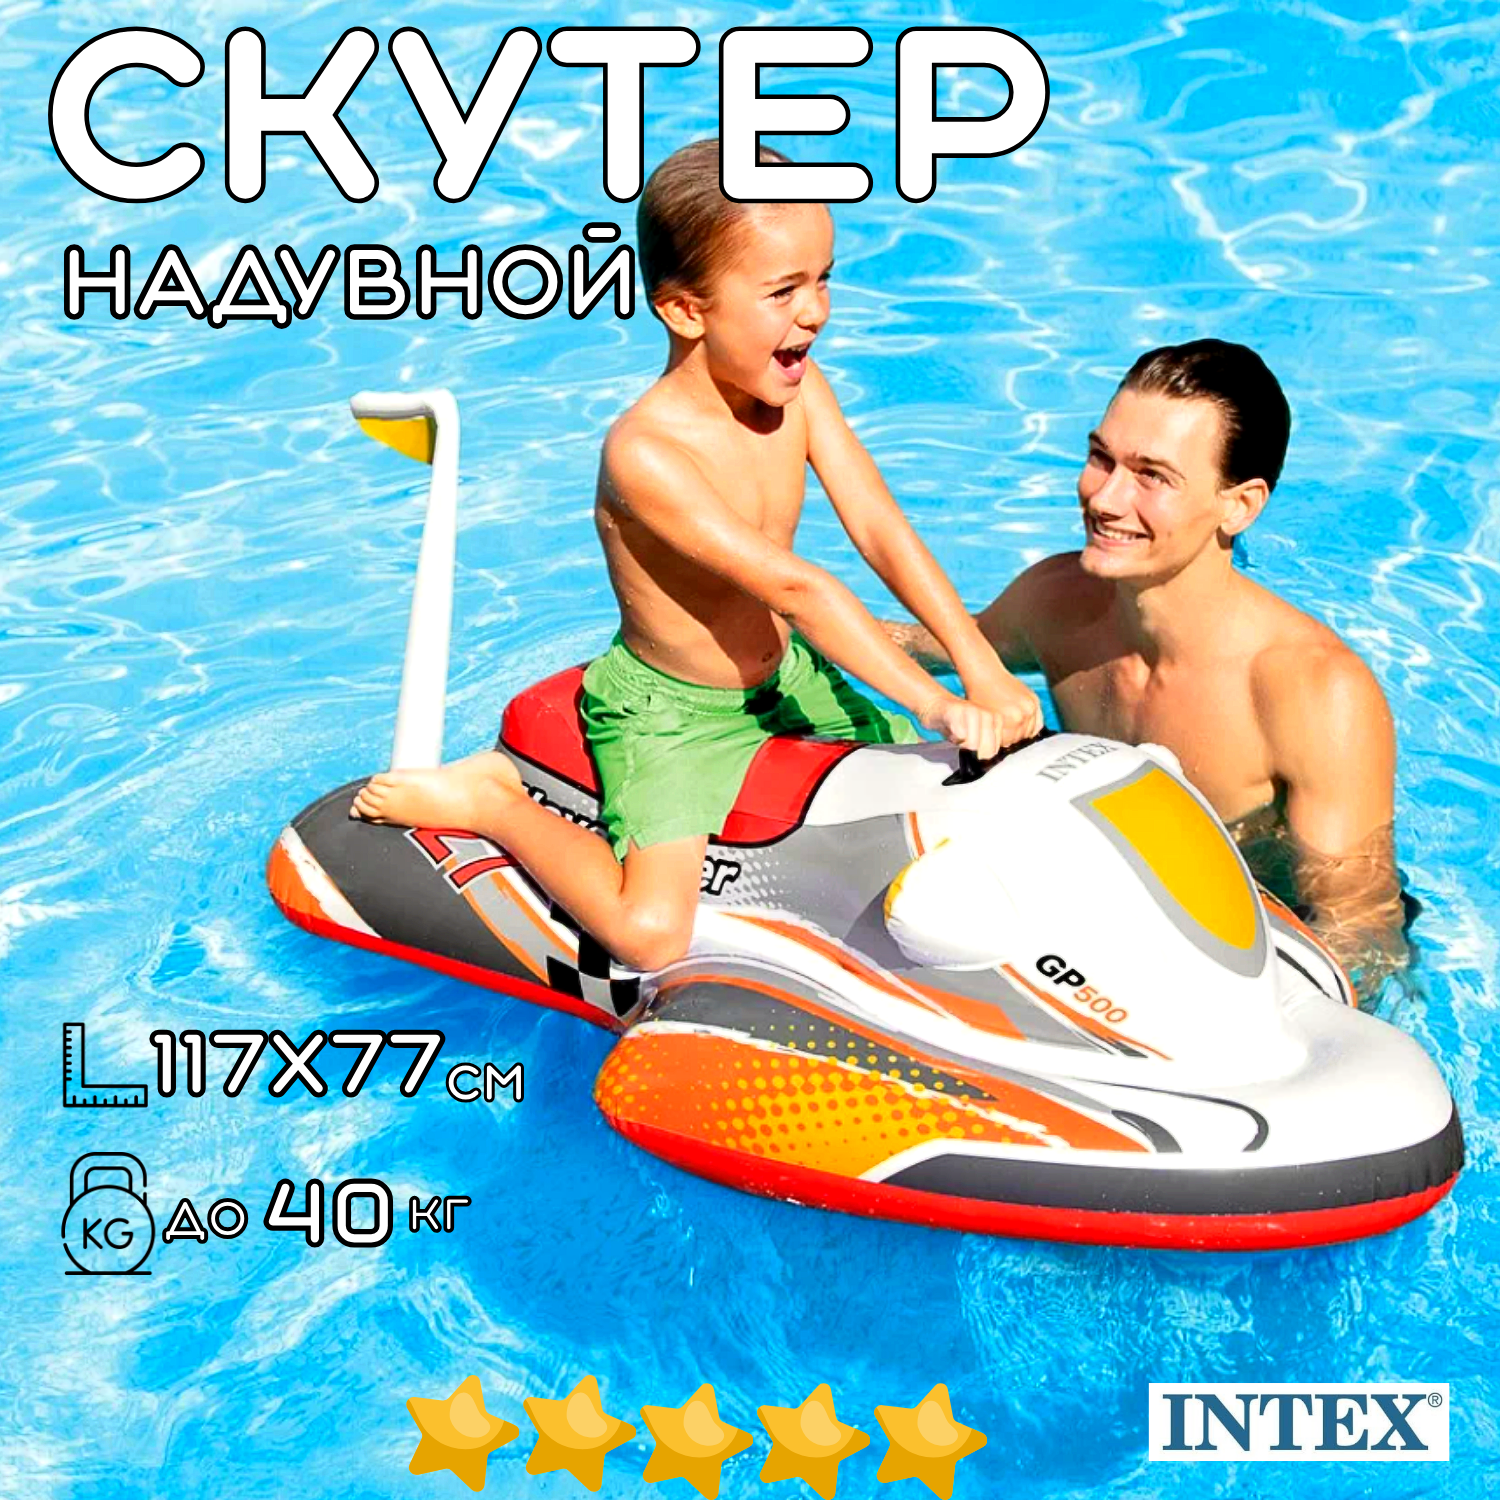 Надувная игрушка для плавания верхом матрас INTEX Скутер 117х77 см, с ручками надувной плот, пляжный матрас - наездник для девочки для мальчика, нагрузка до 40 кг, возраст до 14 лет / 1 шт